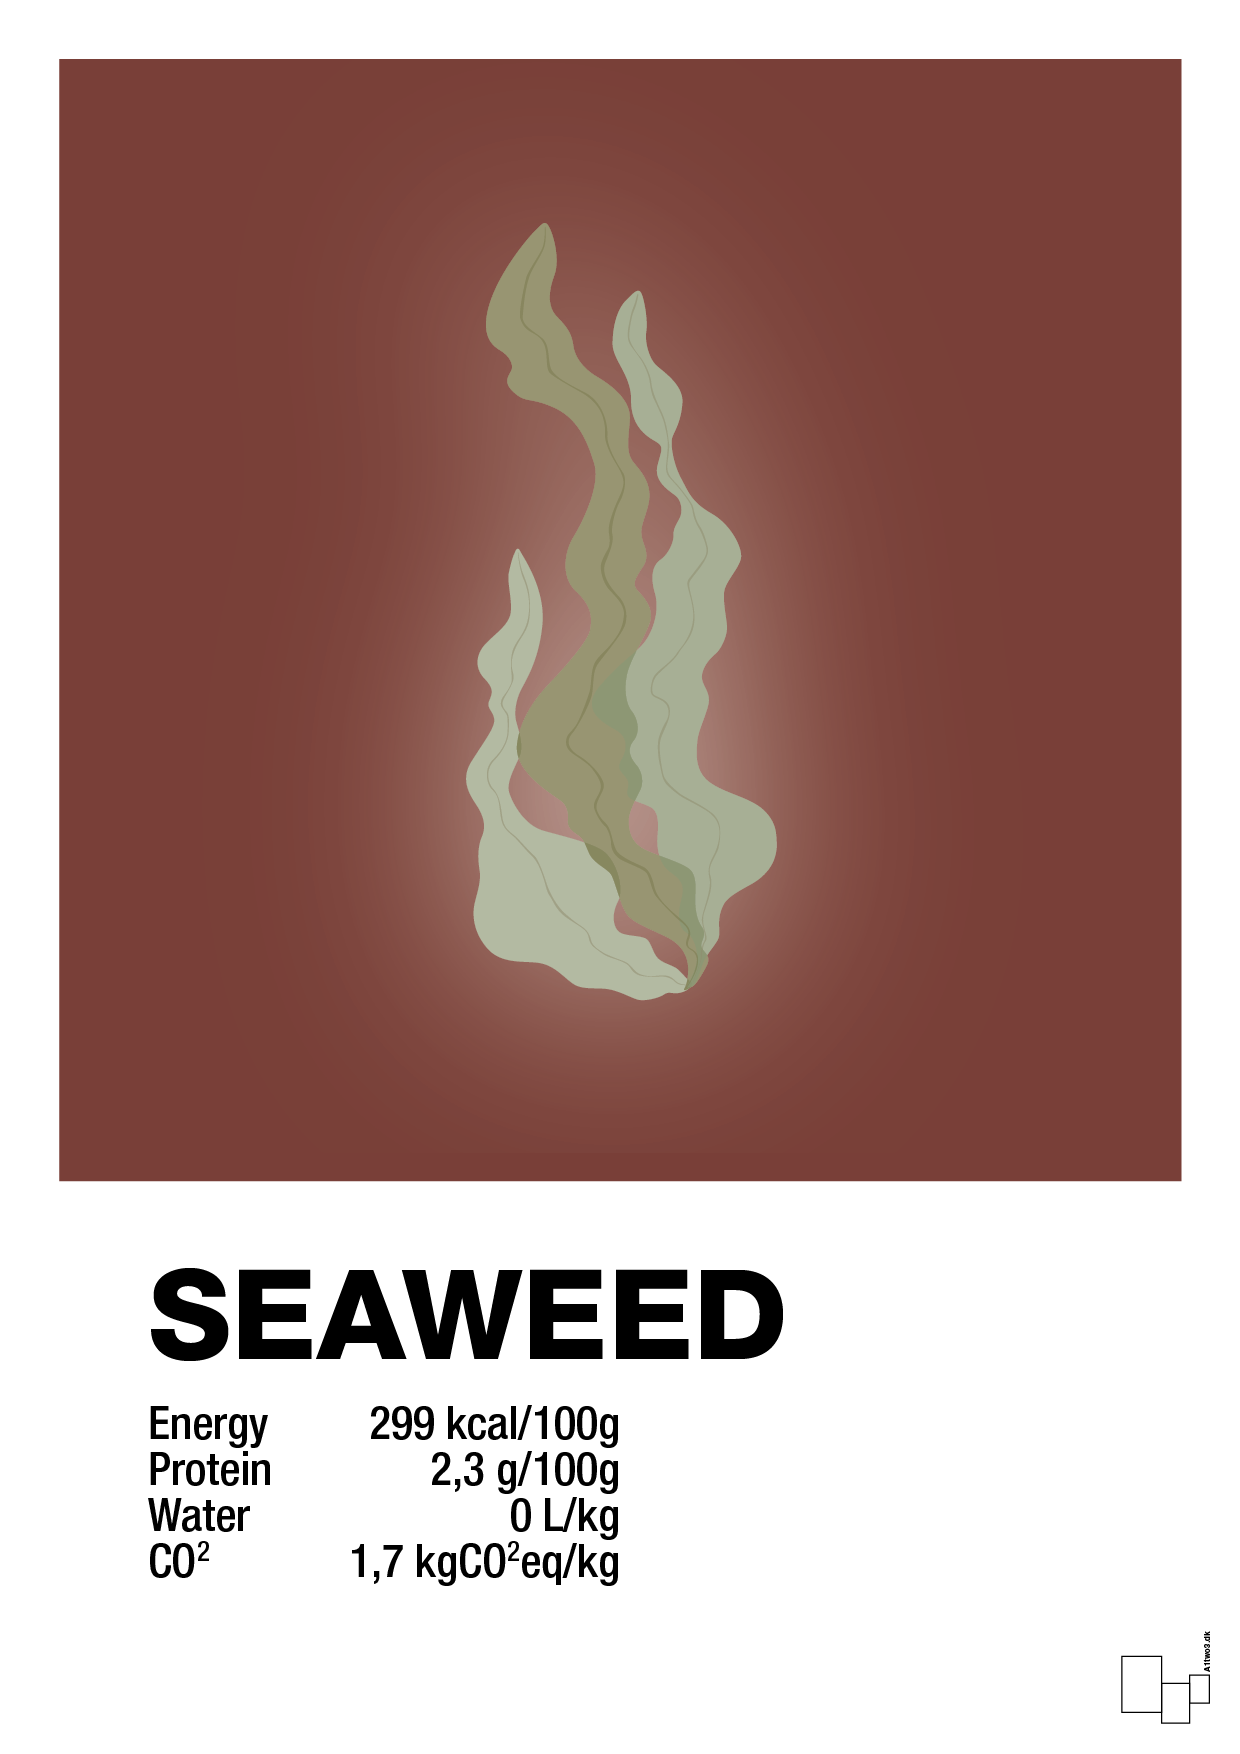 seaweed nutrition og miljø - Plakat med Mad & Drikke i Red Pepper